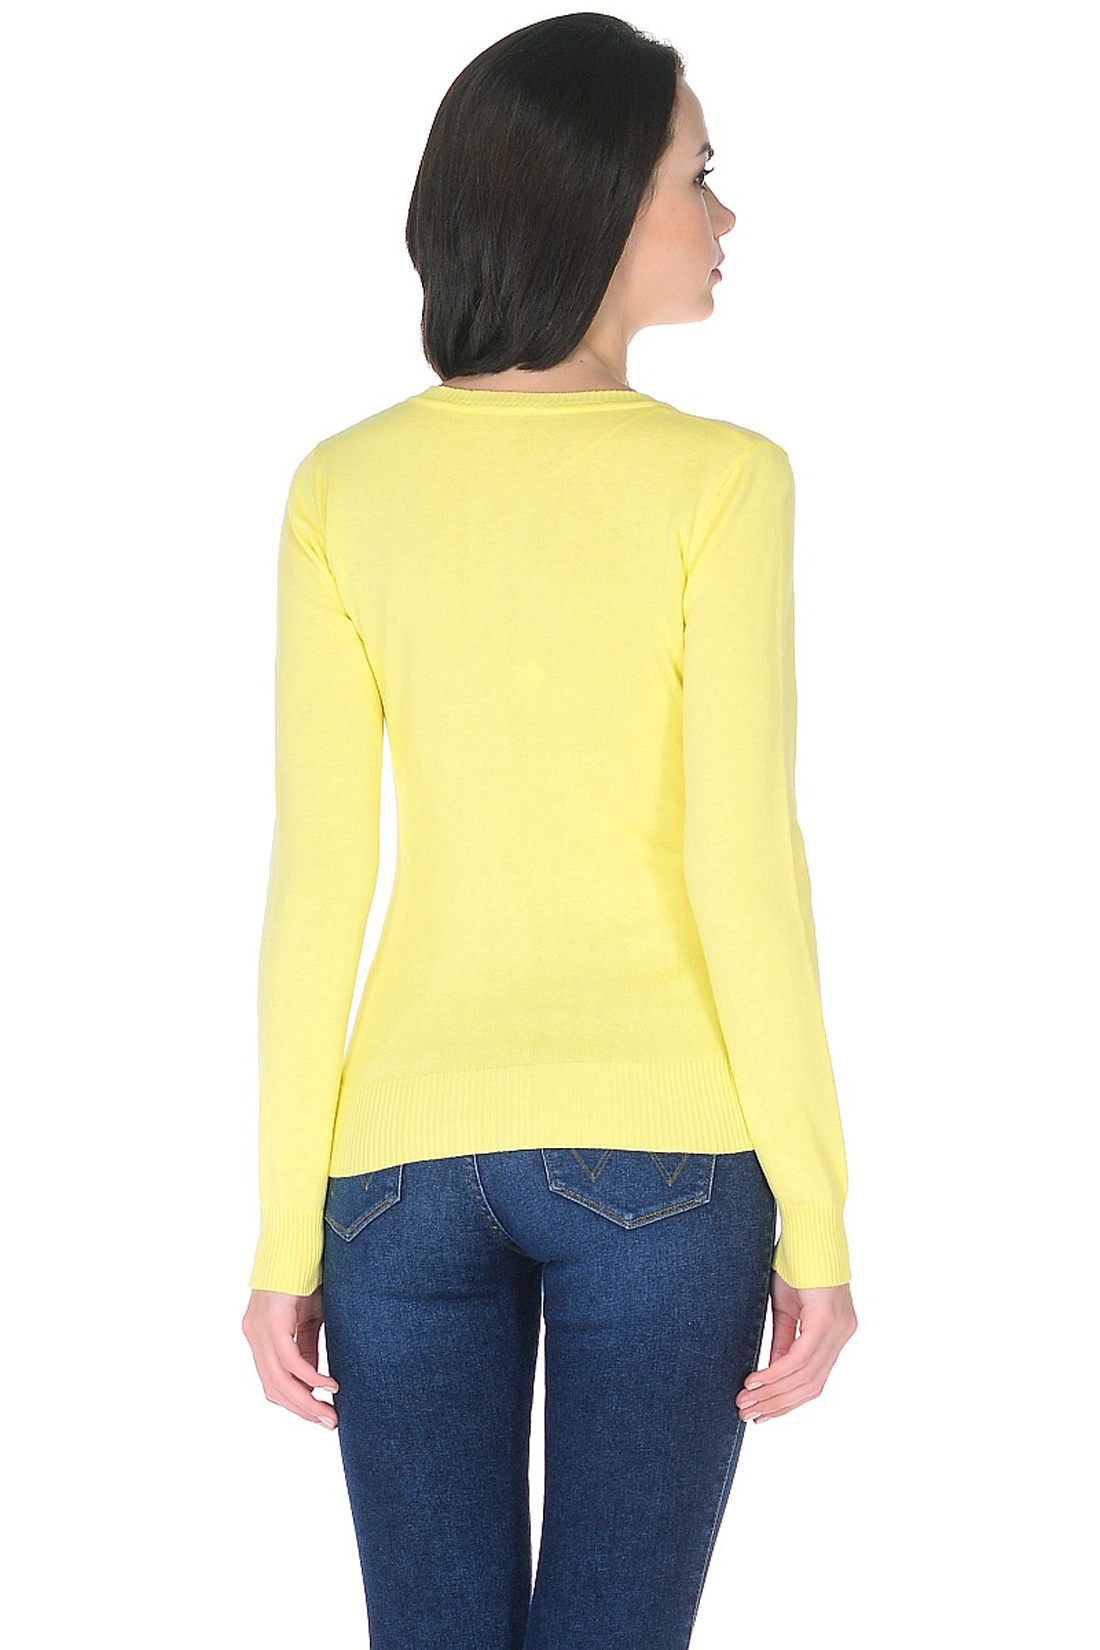 Базовый пуловер (арт. baon B138201), размер XL, цвет желтый Базовый пуловер (арт. baon B138201) - фото 2